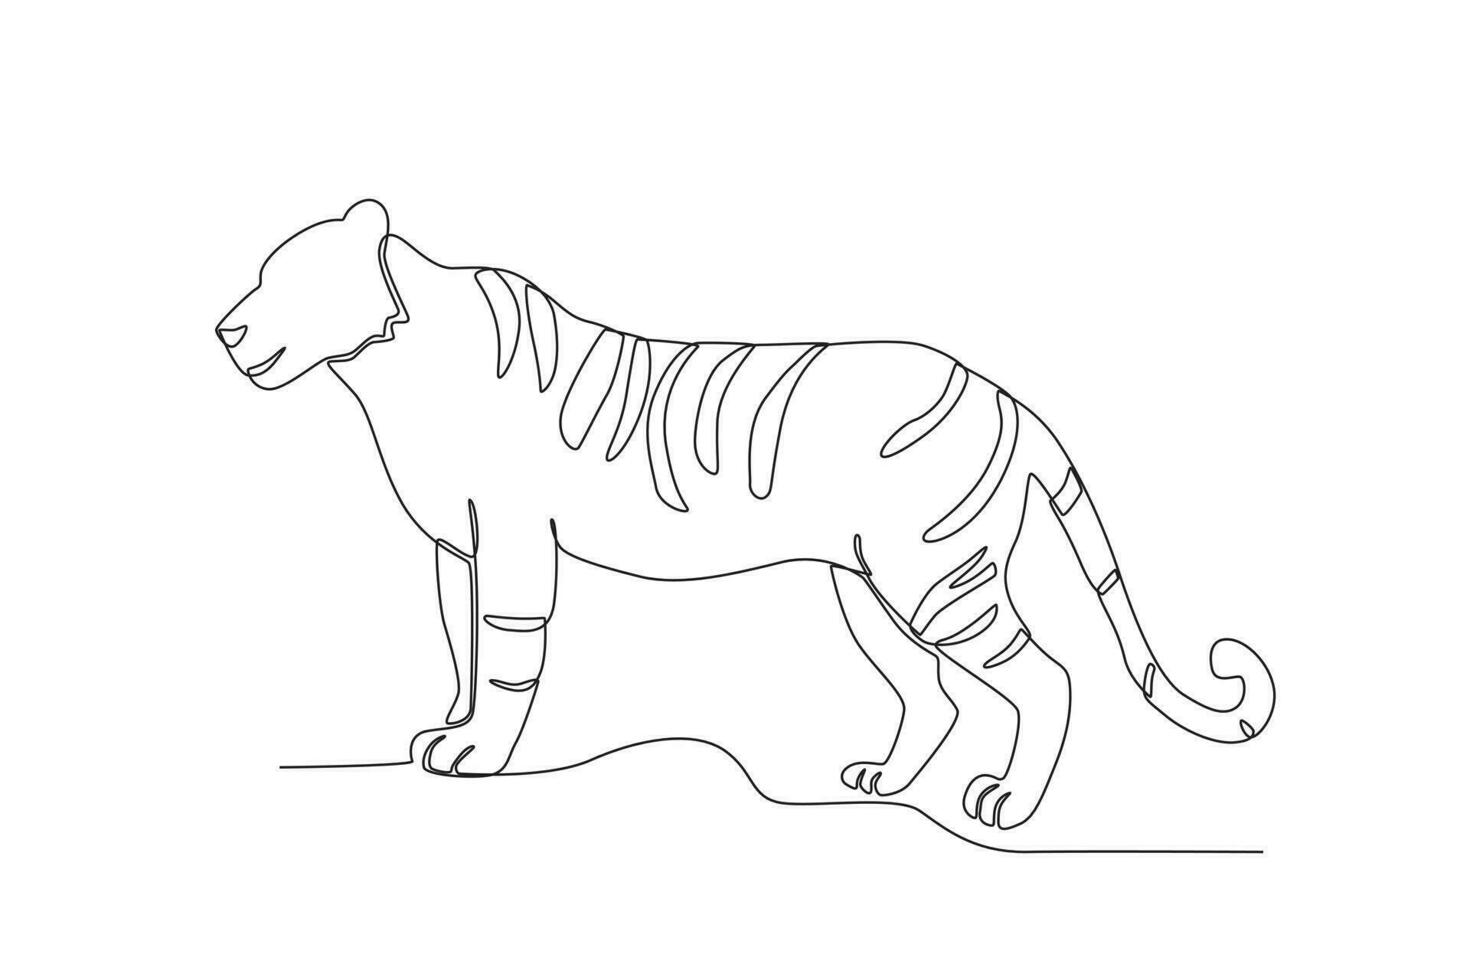 Single einer Linie Zeichnung von ein Tiger. kontinuierlich Linie zeichnen Design Grafik Vektor Illustration.